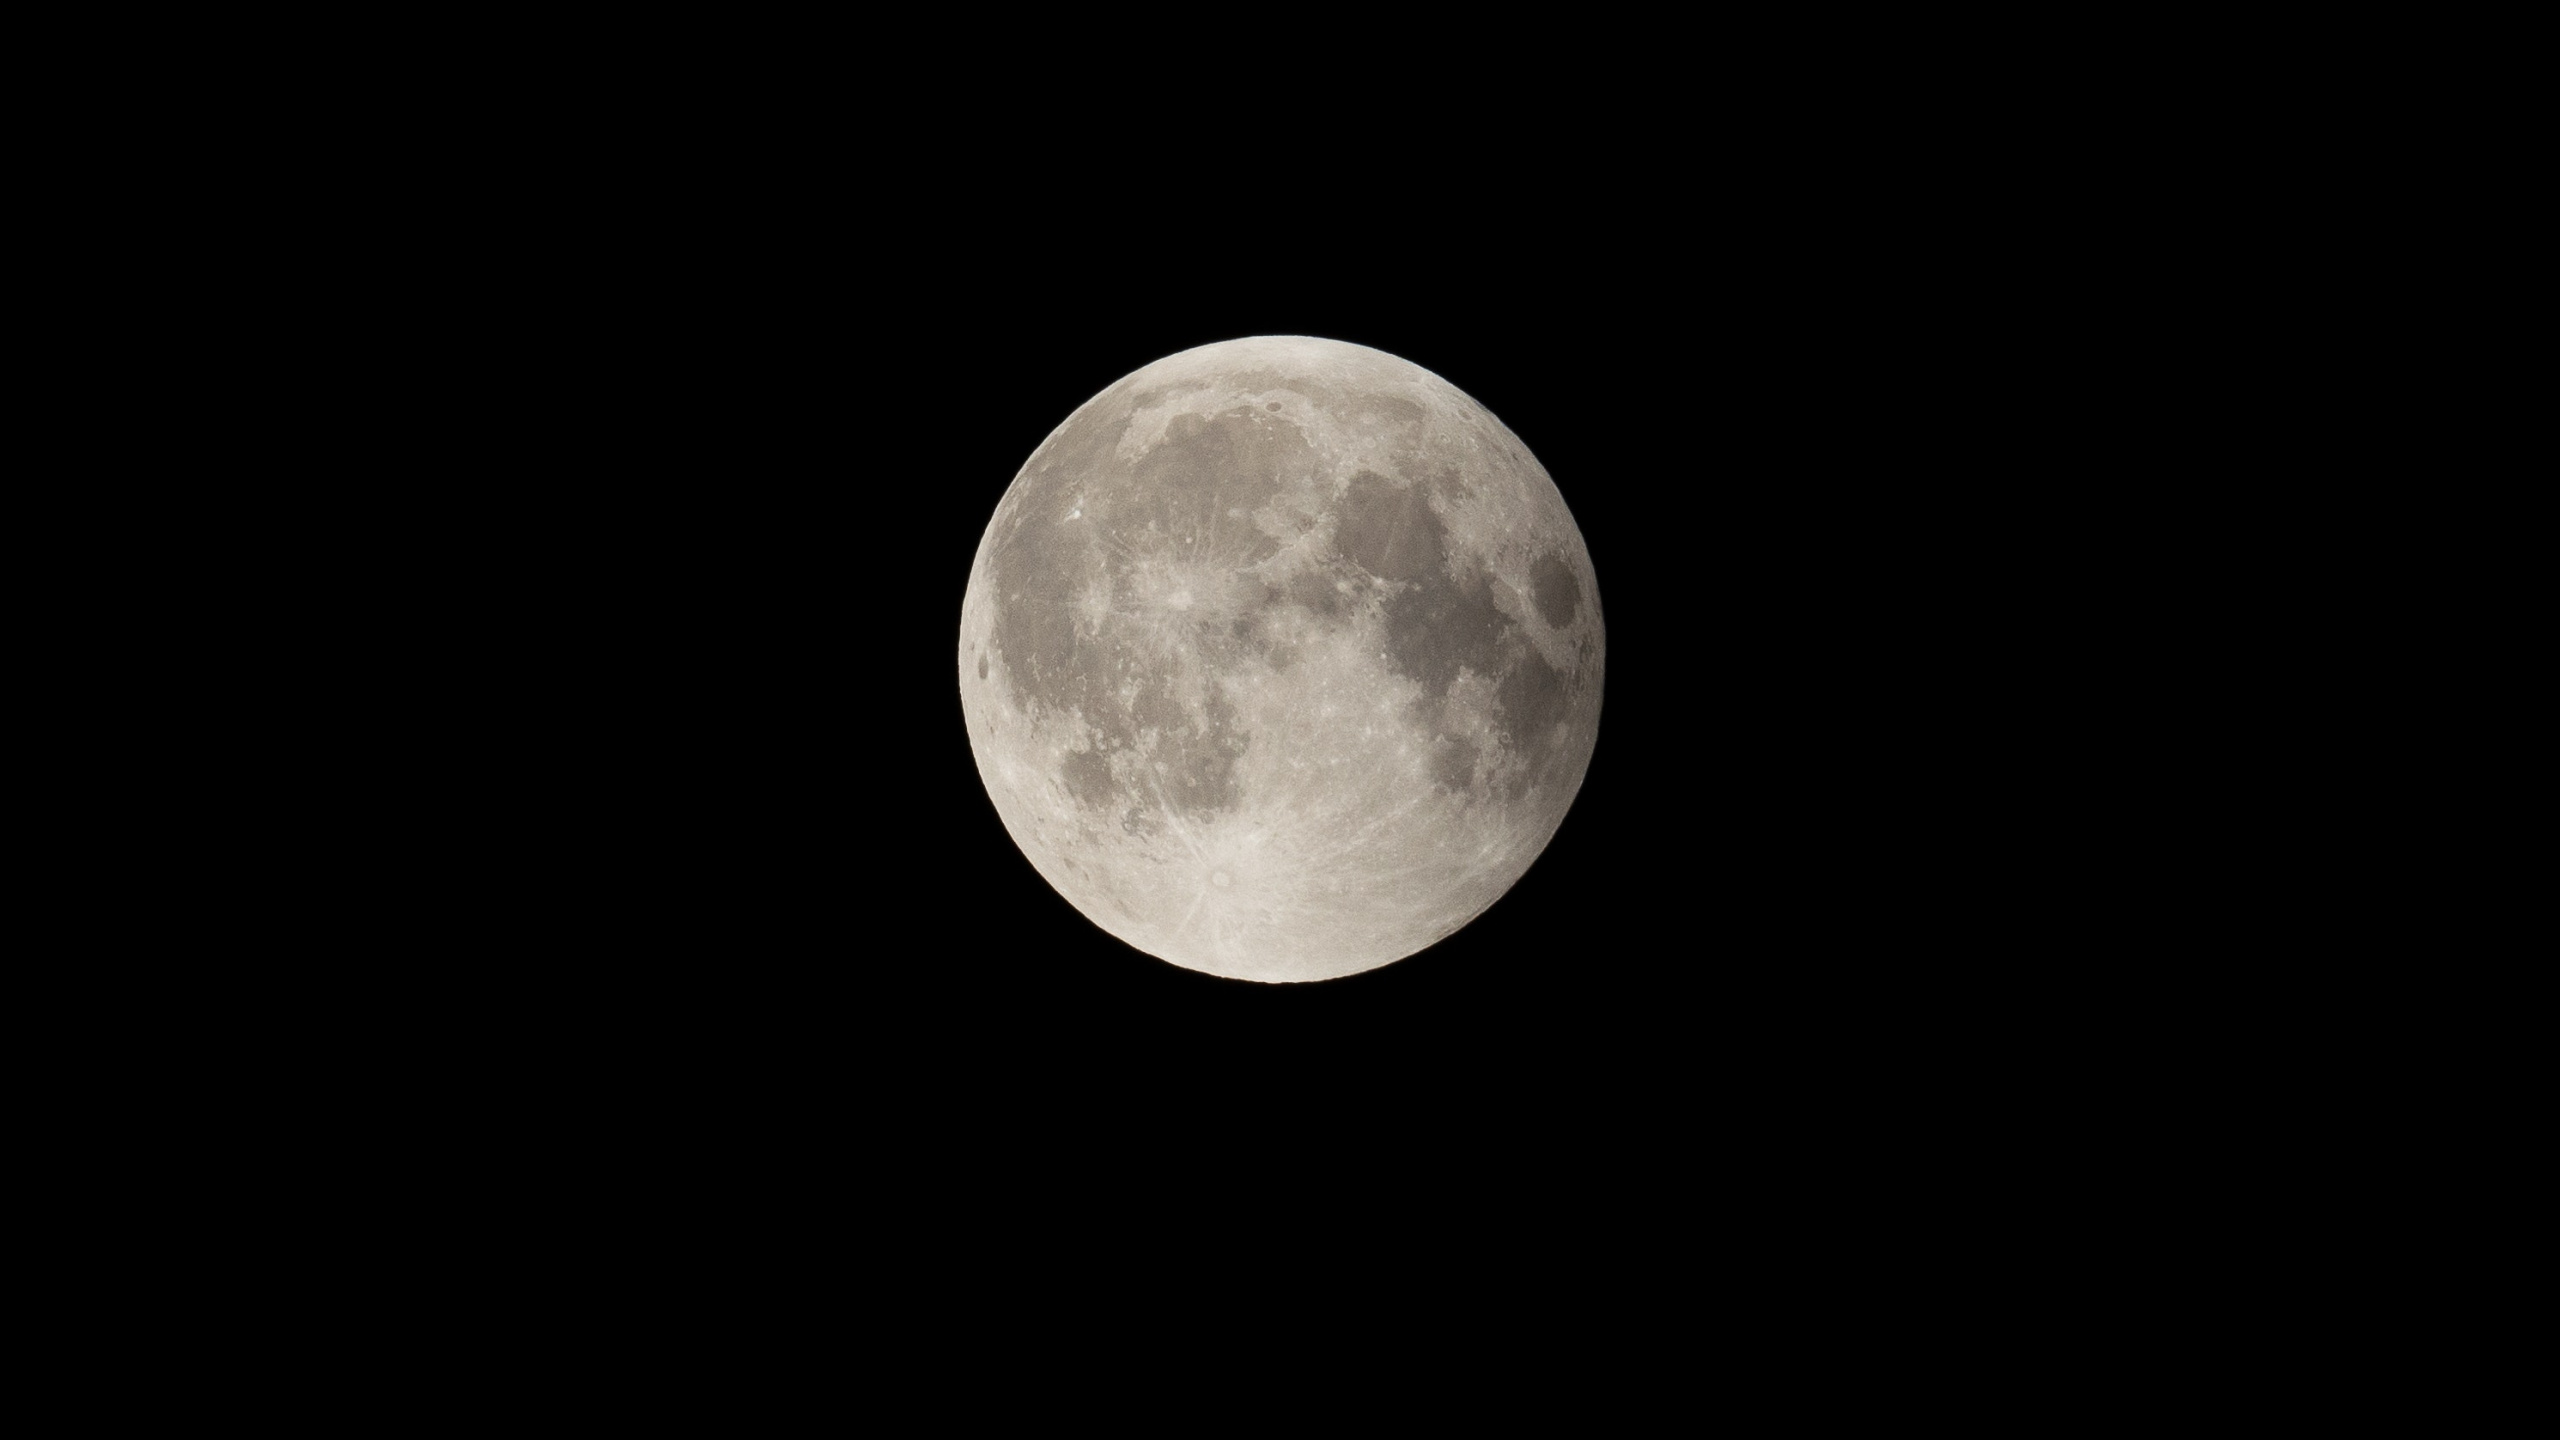 Full Moon in Dark Night Sky. Wallpaper in 2560x1440 Resolution